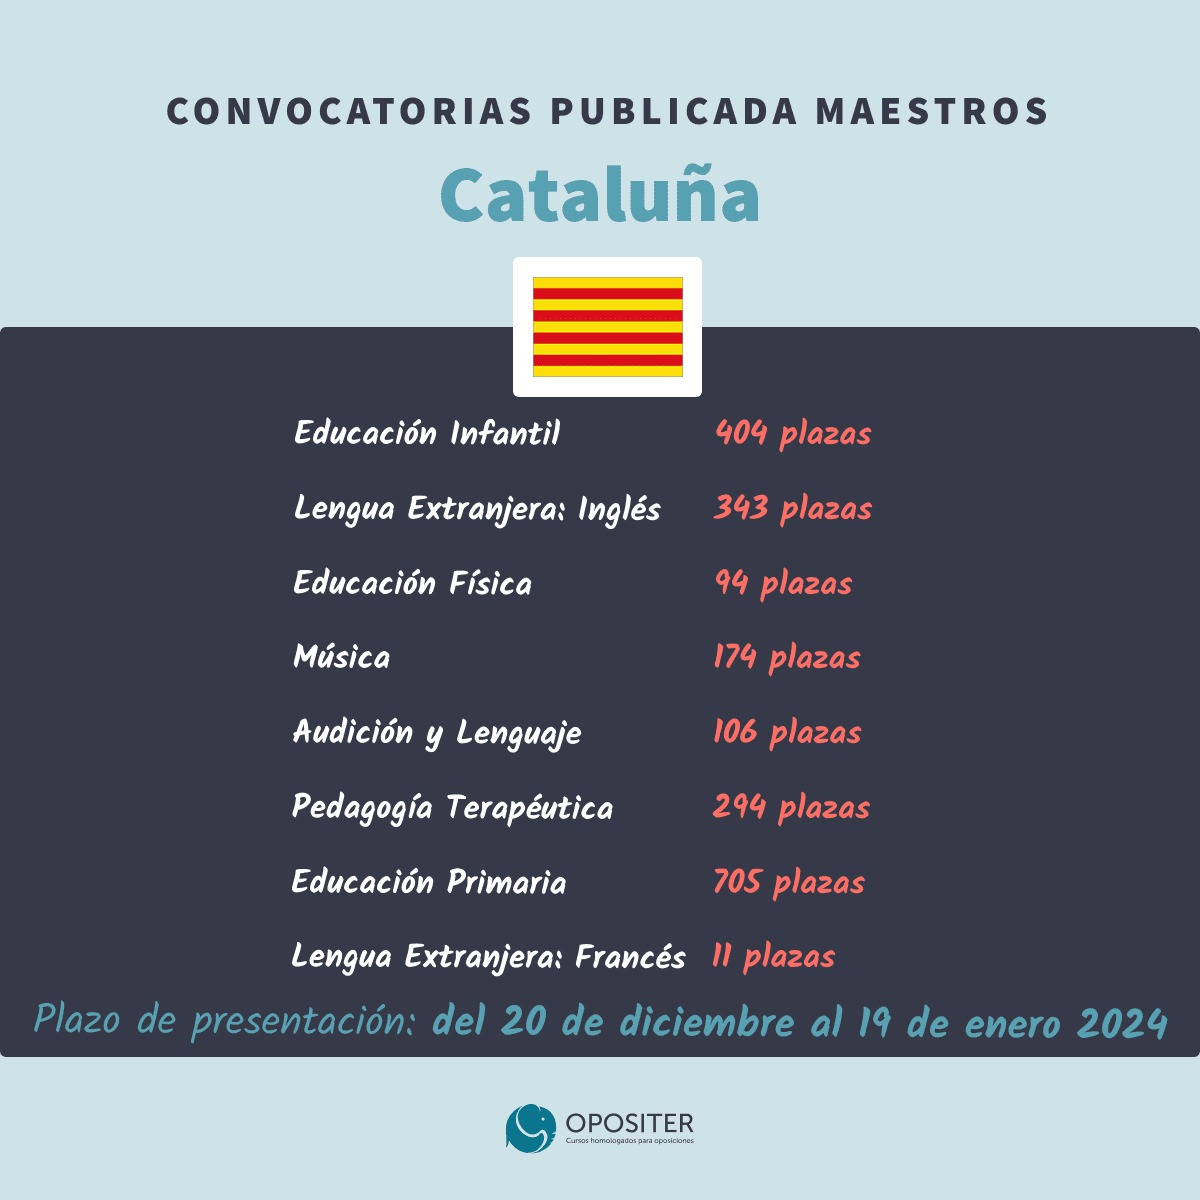 Convocatoria oposiciones reposición maestros Cataluña